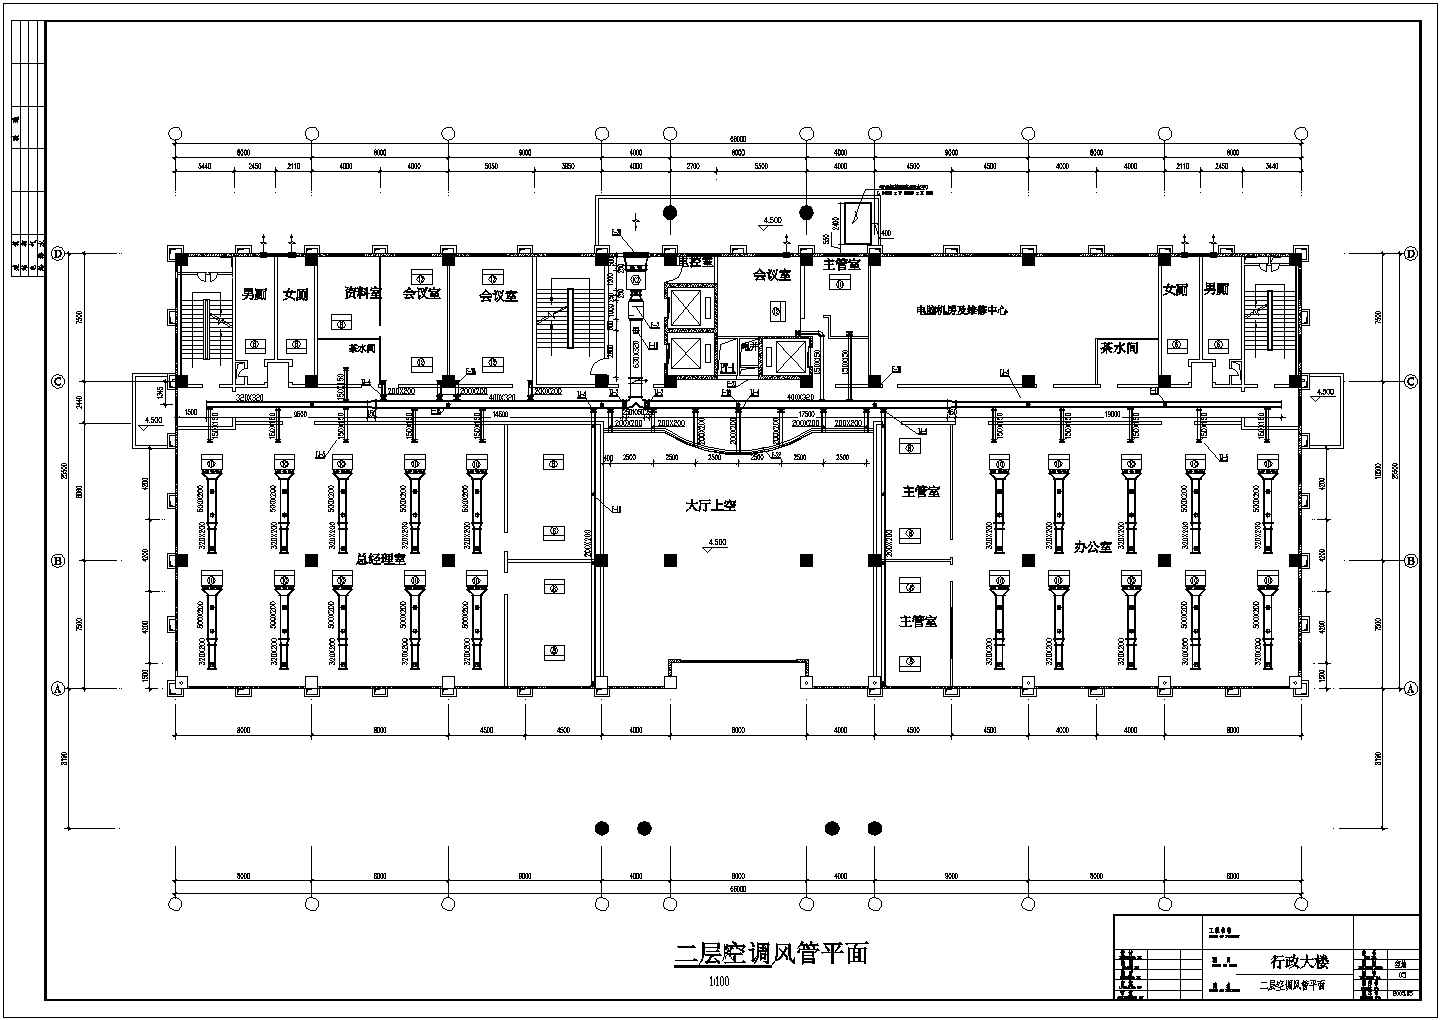 商业区多层行政大楼全套空调工程施工设计cad图纸(含走道排烟系统图)